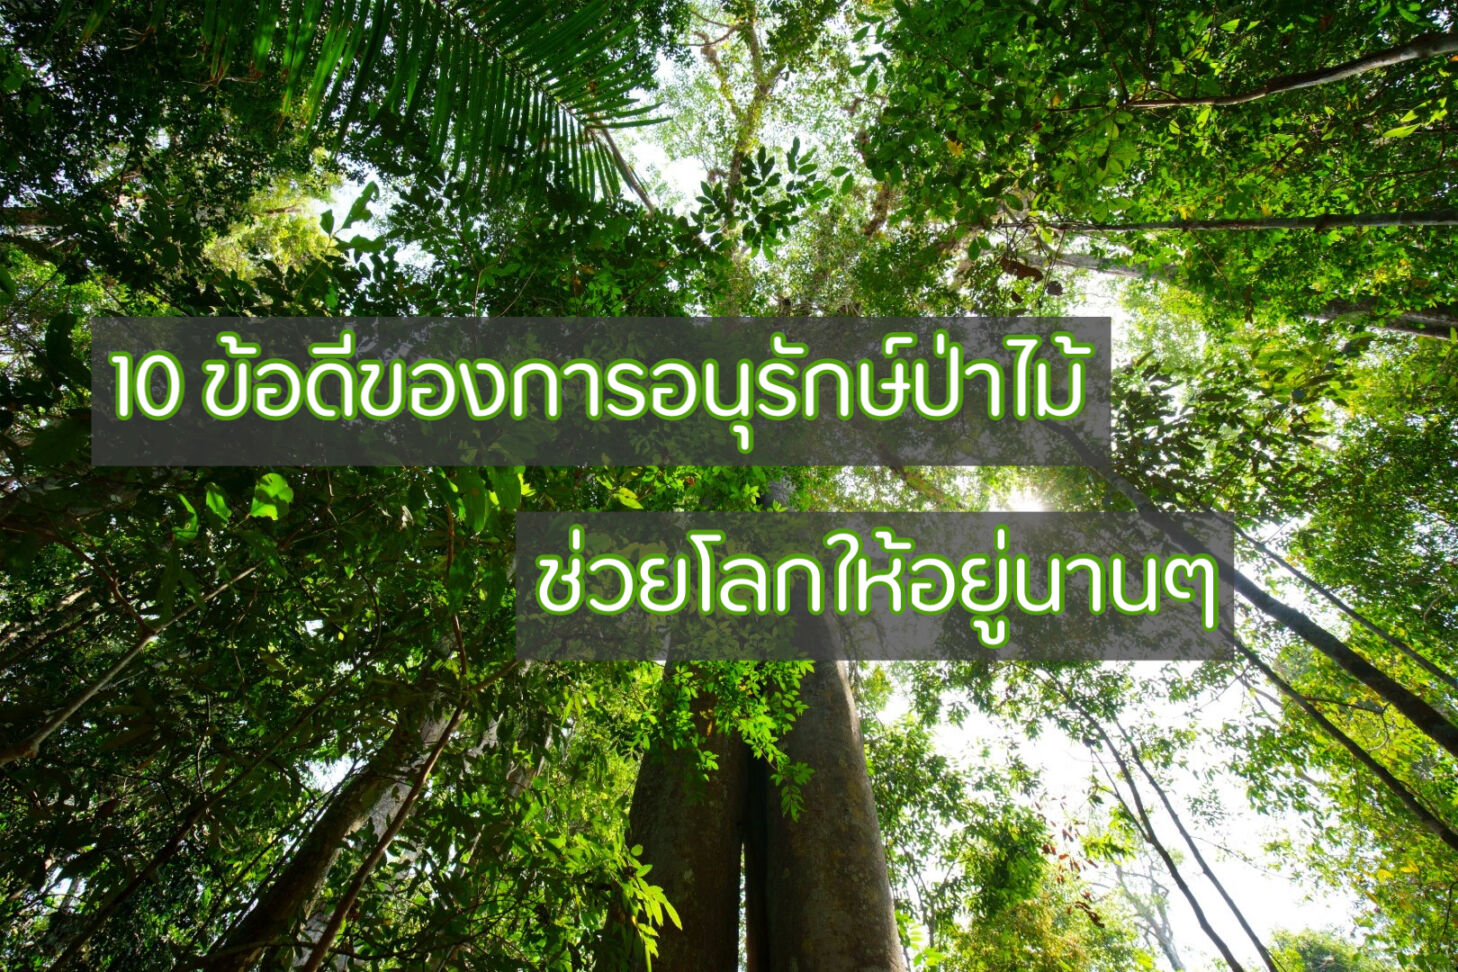 10 ข้อดีของการอนุรักษ์ป่าไม้ คนละไม้คนละมือ ช่วยโลกให้อยู่นานๆ